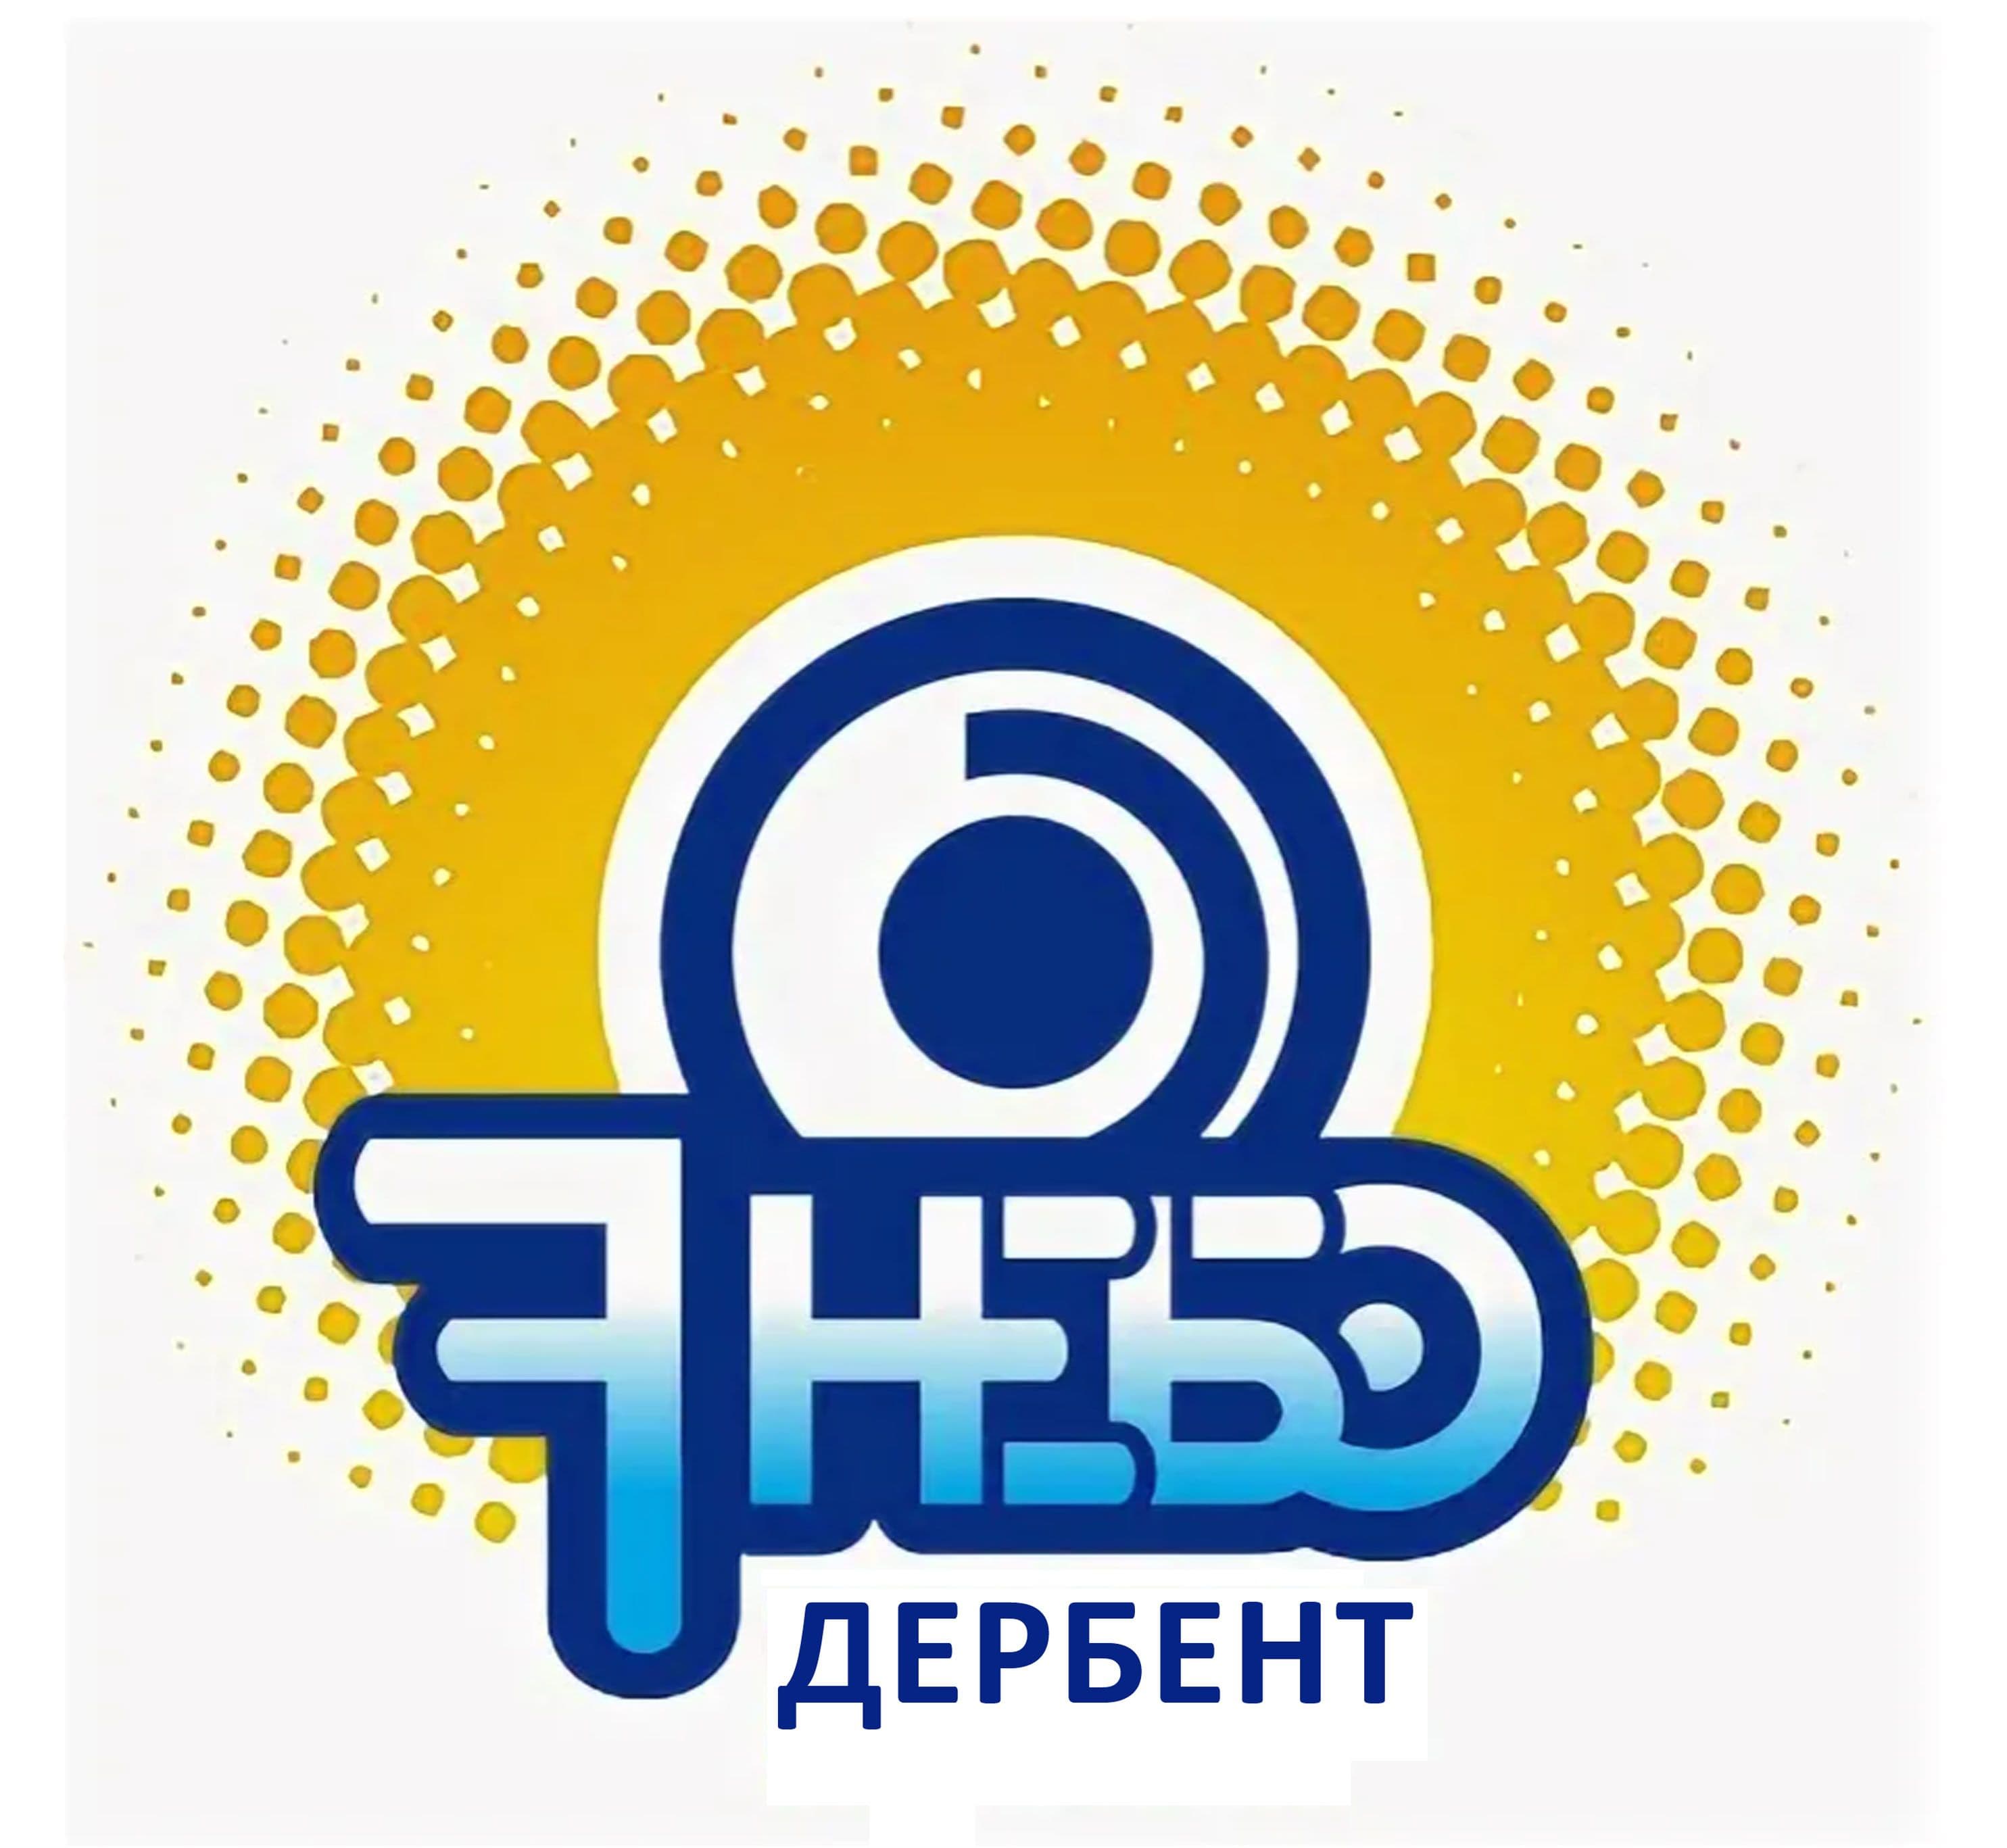 Музыка радио семь. Логотип радио 7 небо Псков. Седьмое небо Псков. Радио Седьмое небо. Логотипы радиостанций.